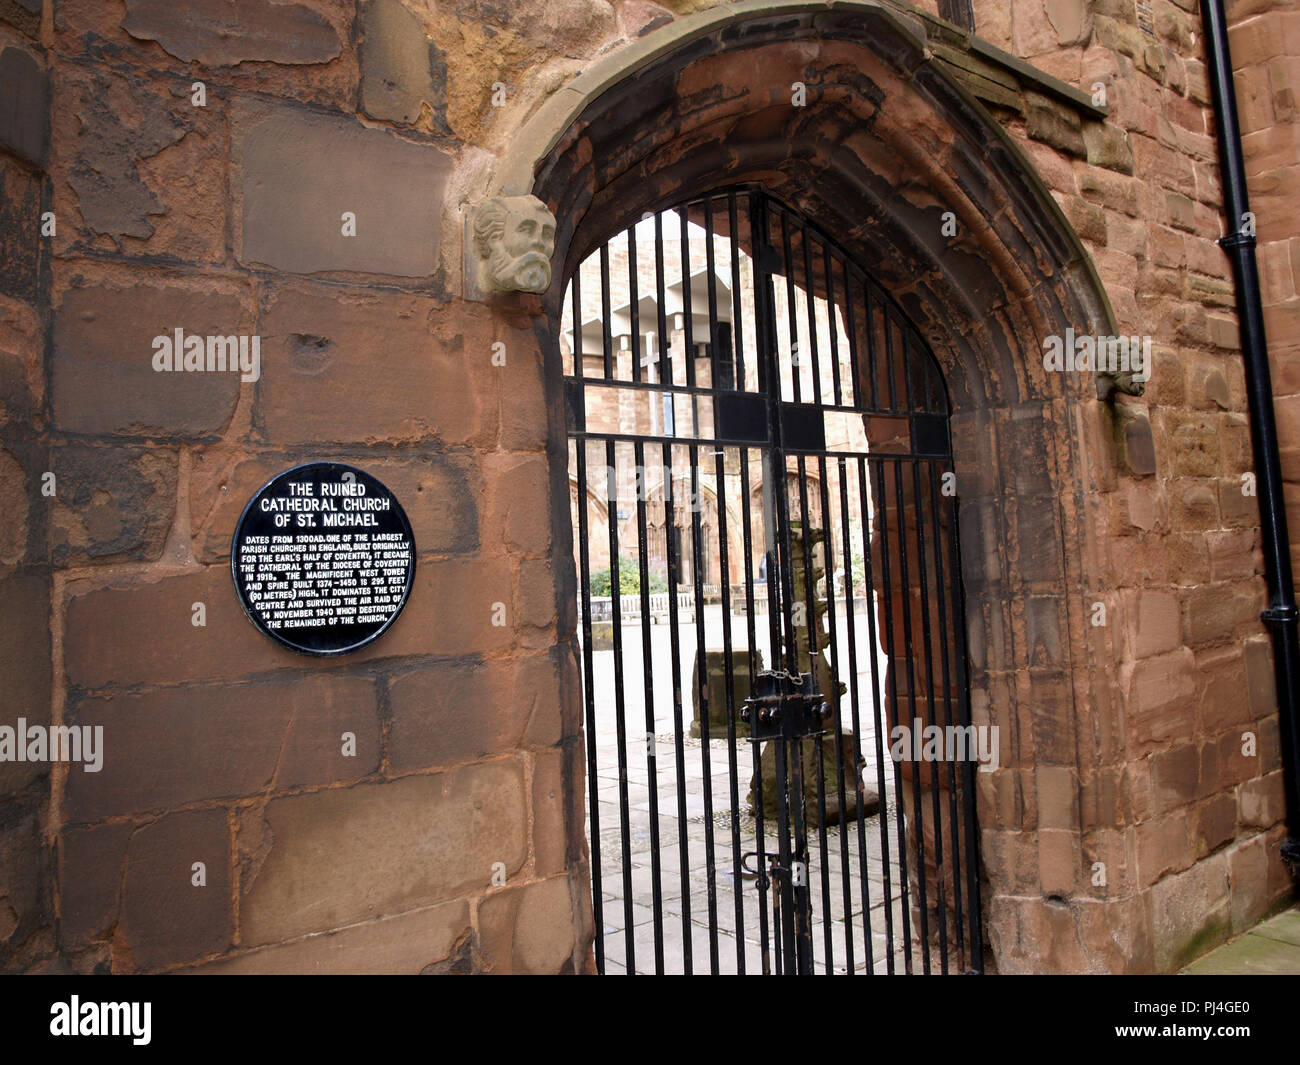 Gedenktafel am Eingangstor zu den Ruinen der Kathedrale St. Michael, Kathedrale von Coventry, Coventry, West Midlands, England, Großbritannien, Stockfoto